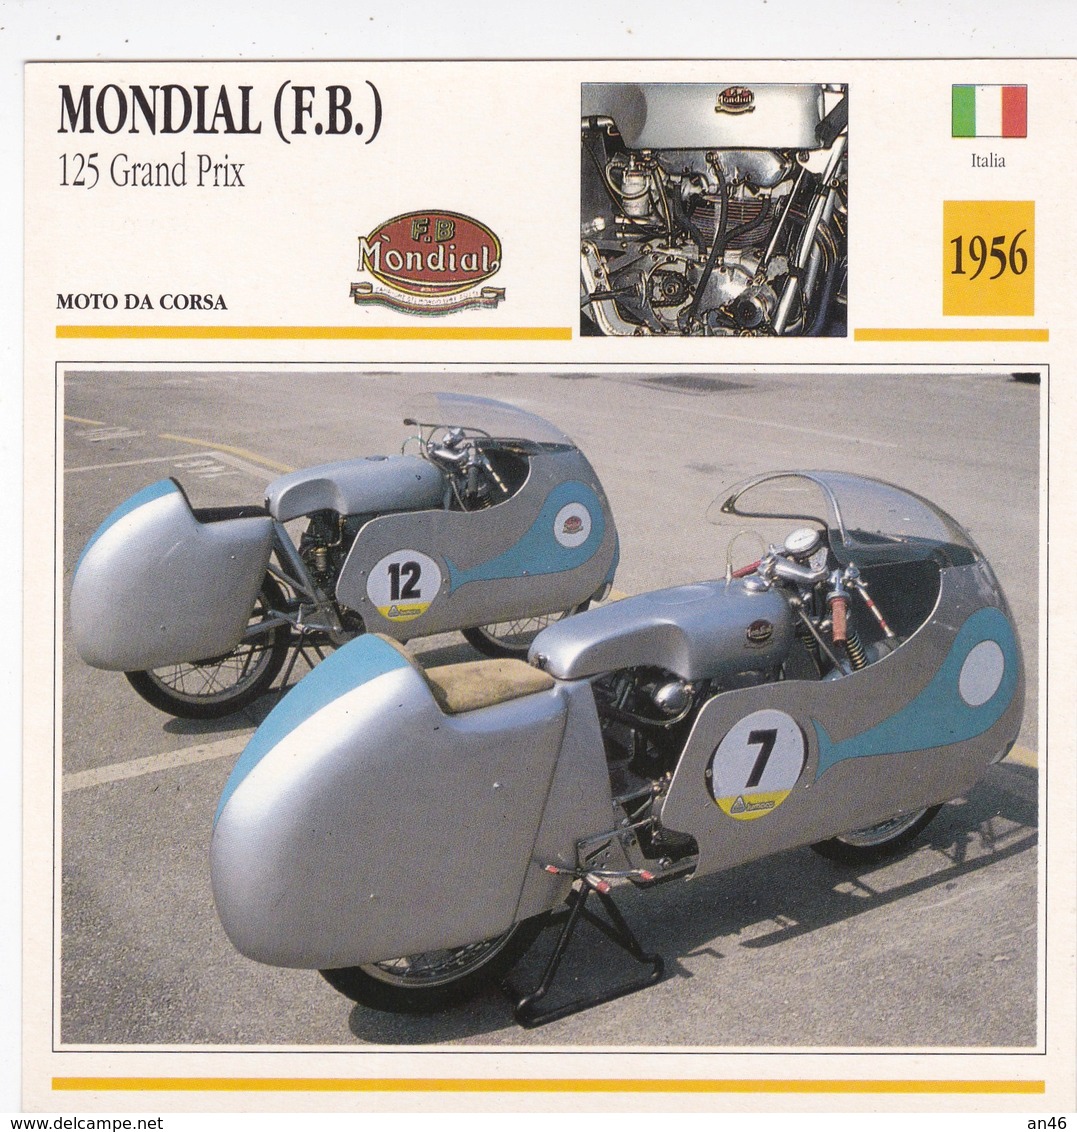 MOTO DA CORSA MONDIAL (F.B.) 125 GRAND PRIX ITALIA 1956 DESCRIZIONE COMPLETA SUL RETRO AUTENTICA 100% - Werbung